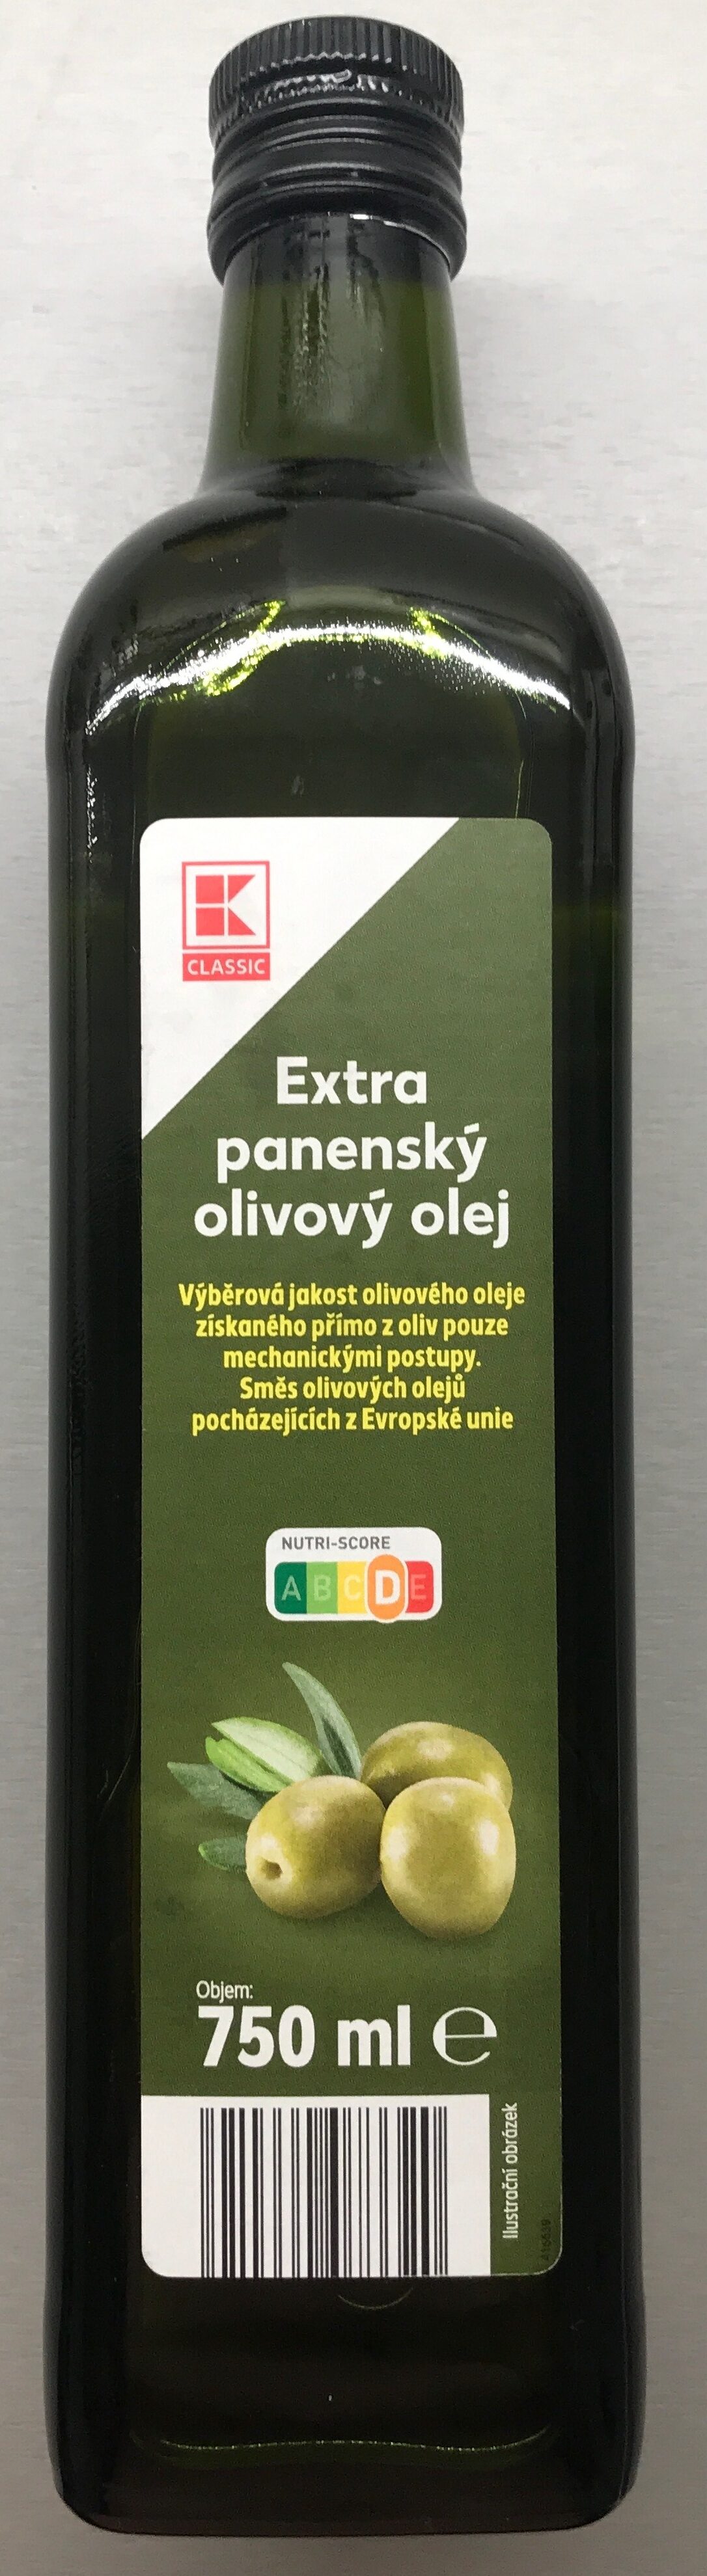 Extra panenský olivový olej - Product - cs